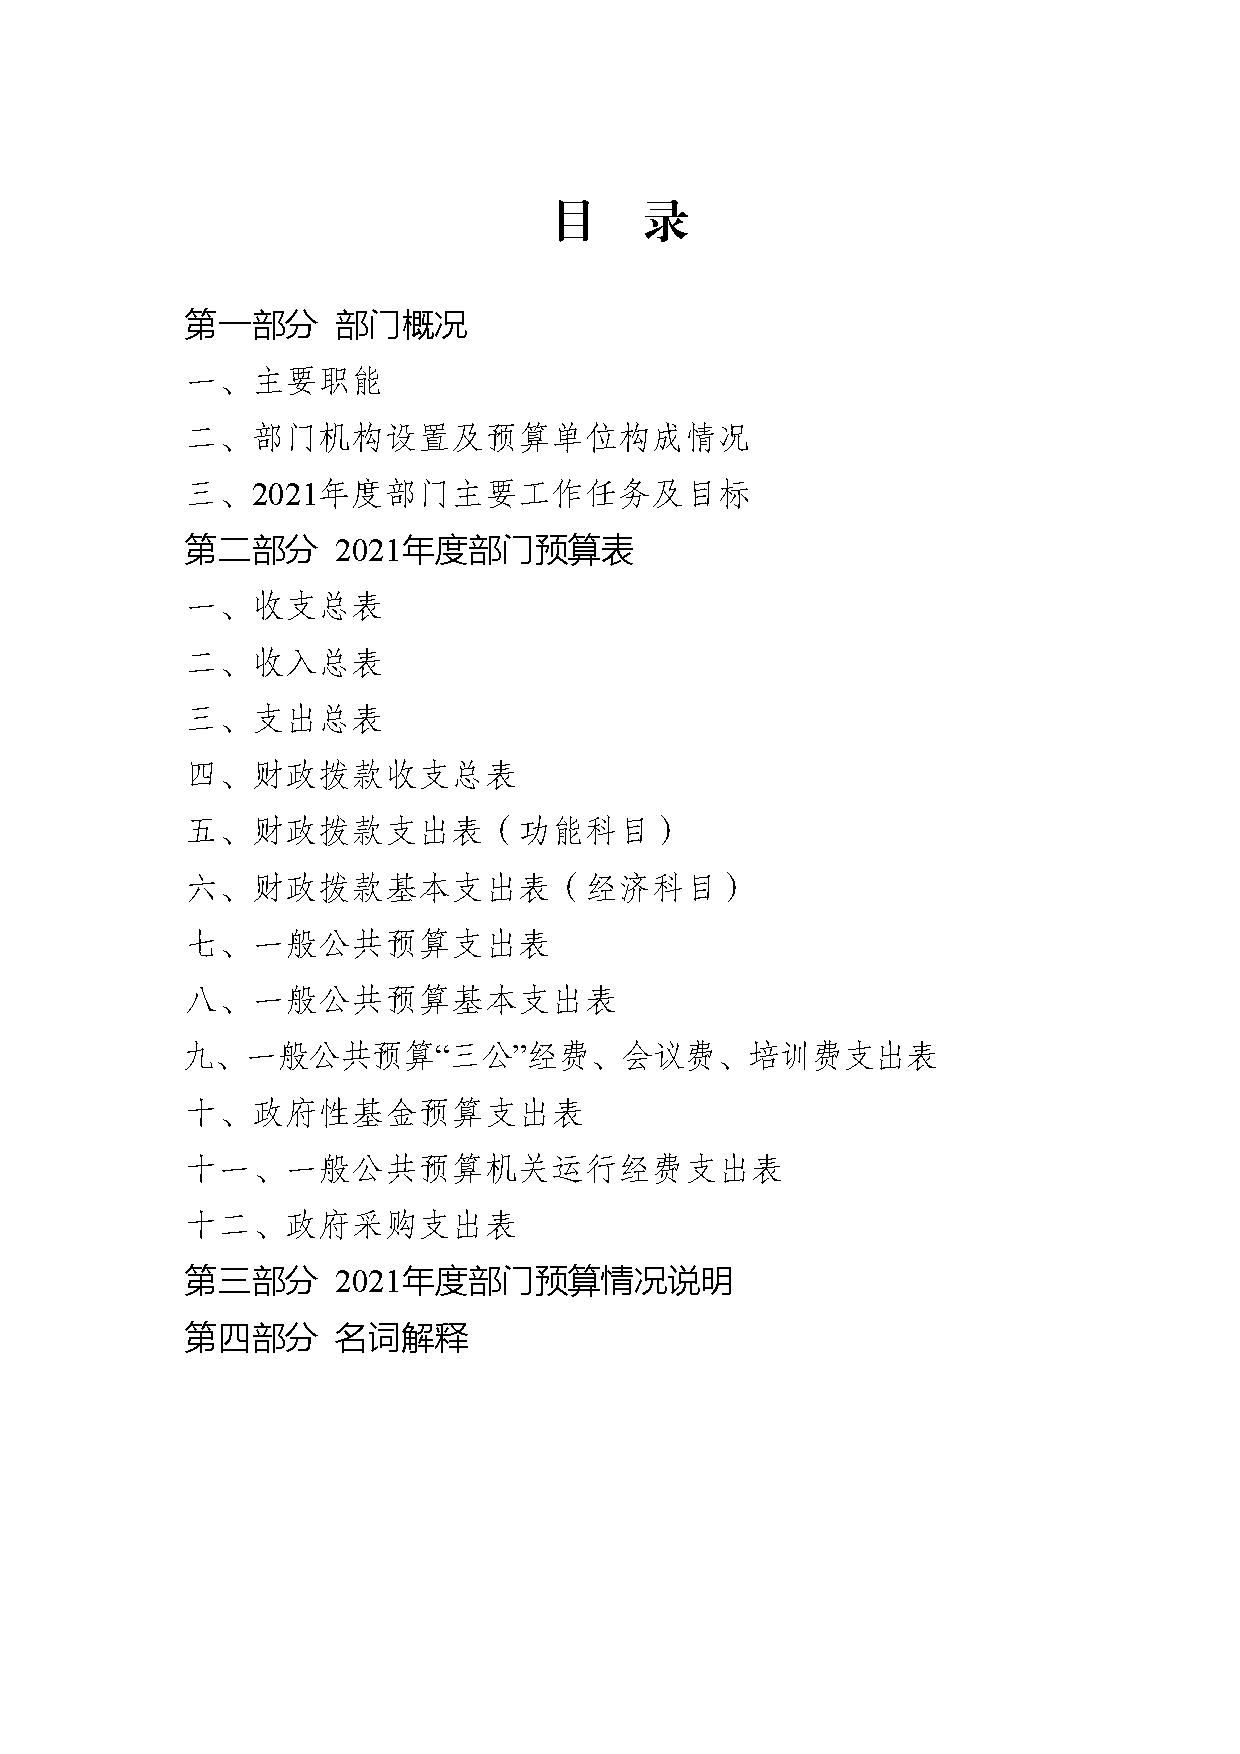 2021年度中国民主建国会江苏省委员会部门预算公开-2.jpg